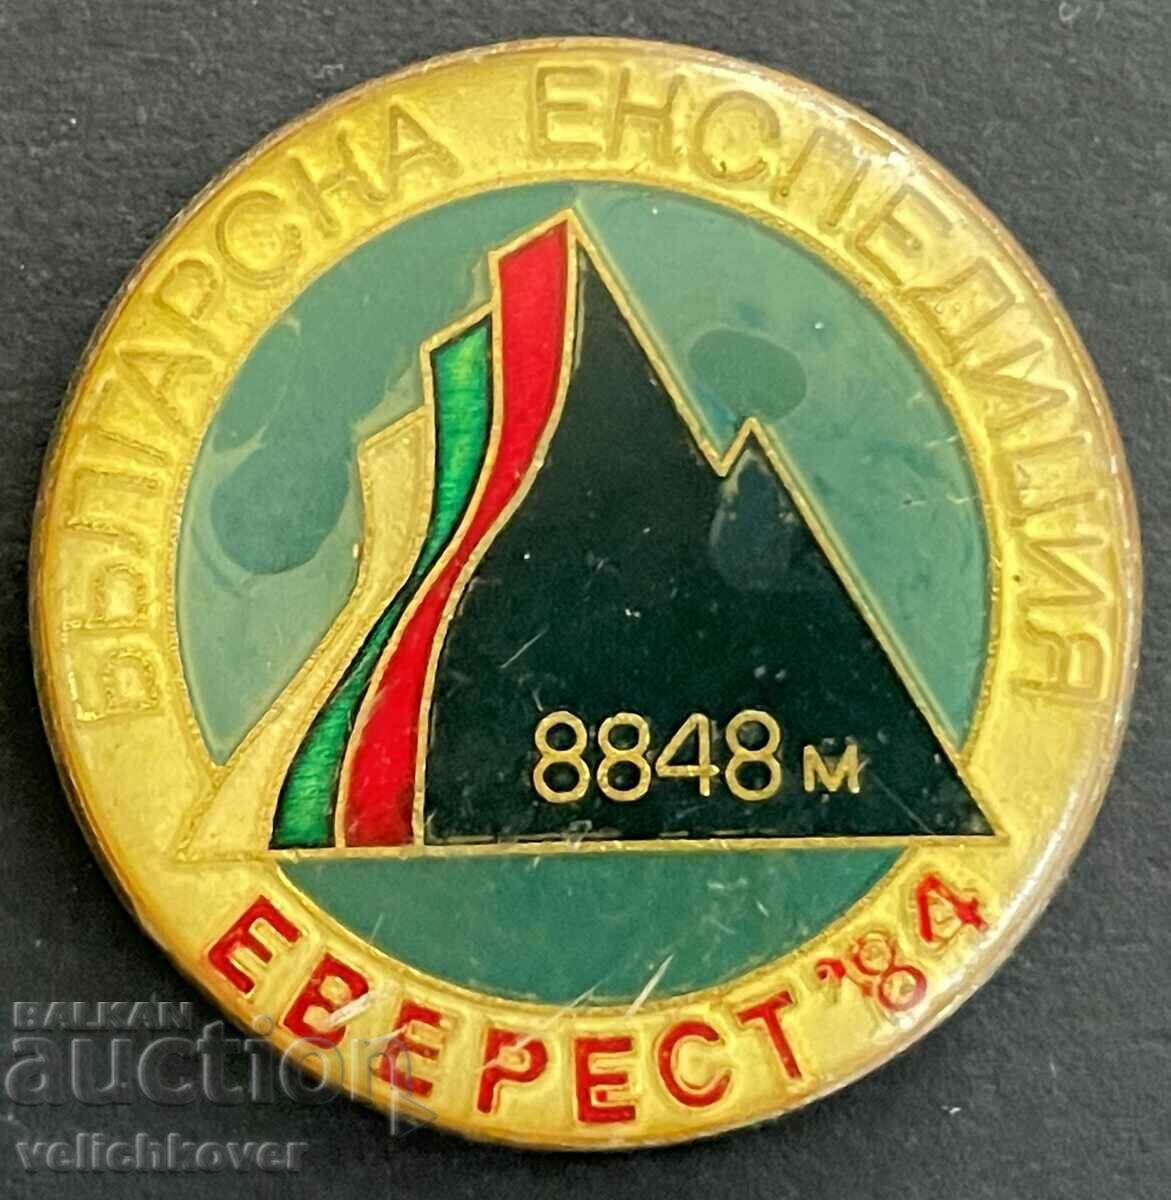 33831 Bulgaria badge Everest Himalaya Mountaineering Expedition